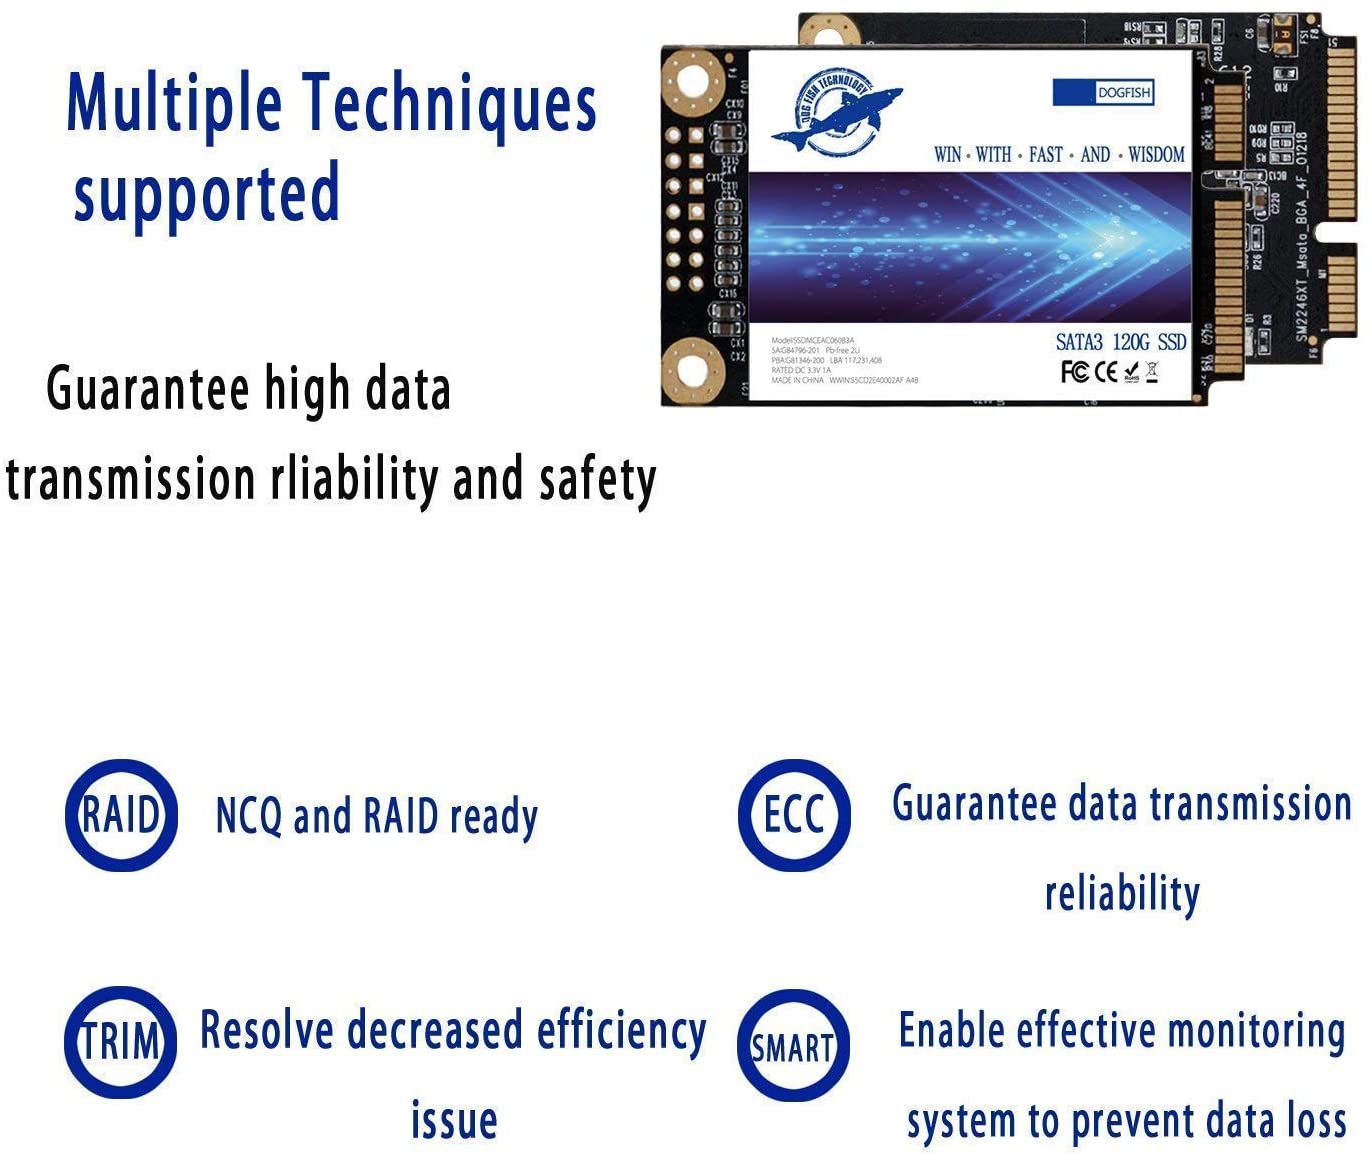  SSD SATA M.2 2280 128GB Dogfish Ngff Internal Solid State Drive  High Performance Hard Drive for Desktop Laptop SATA III 6Gb/s Includes SSD  60GB 120GB 240GB 480GB 1TB (128GB M.2 2280) 